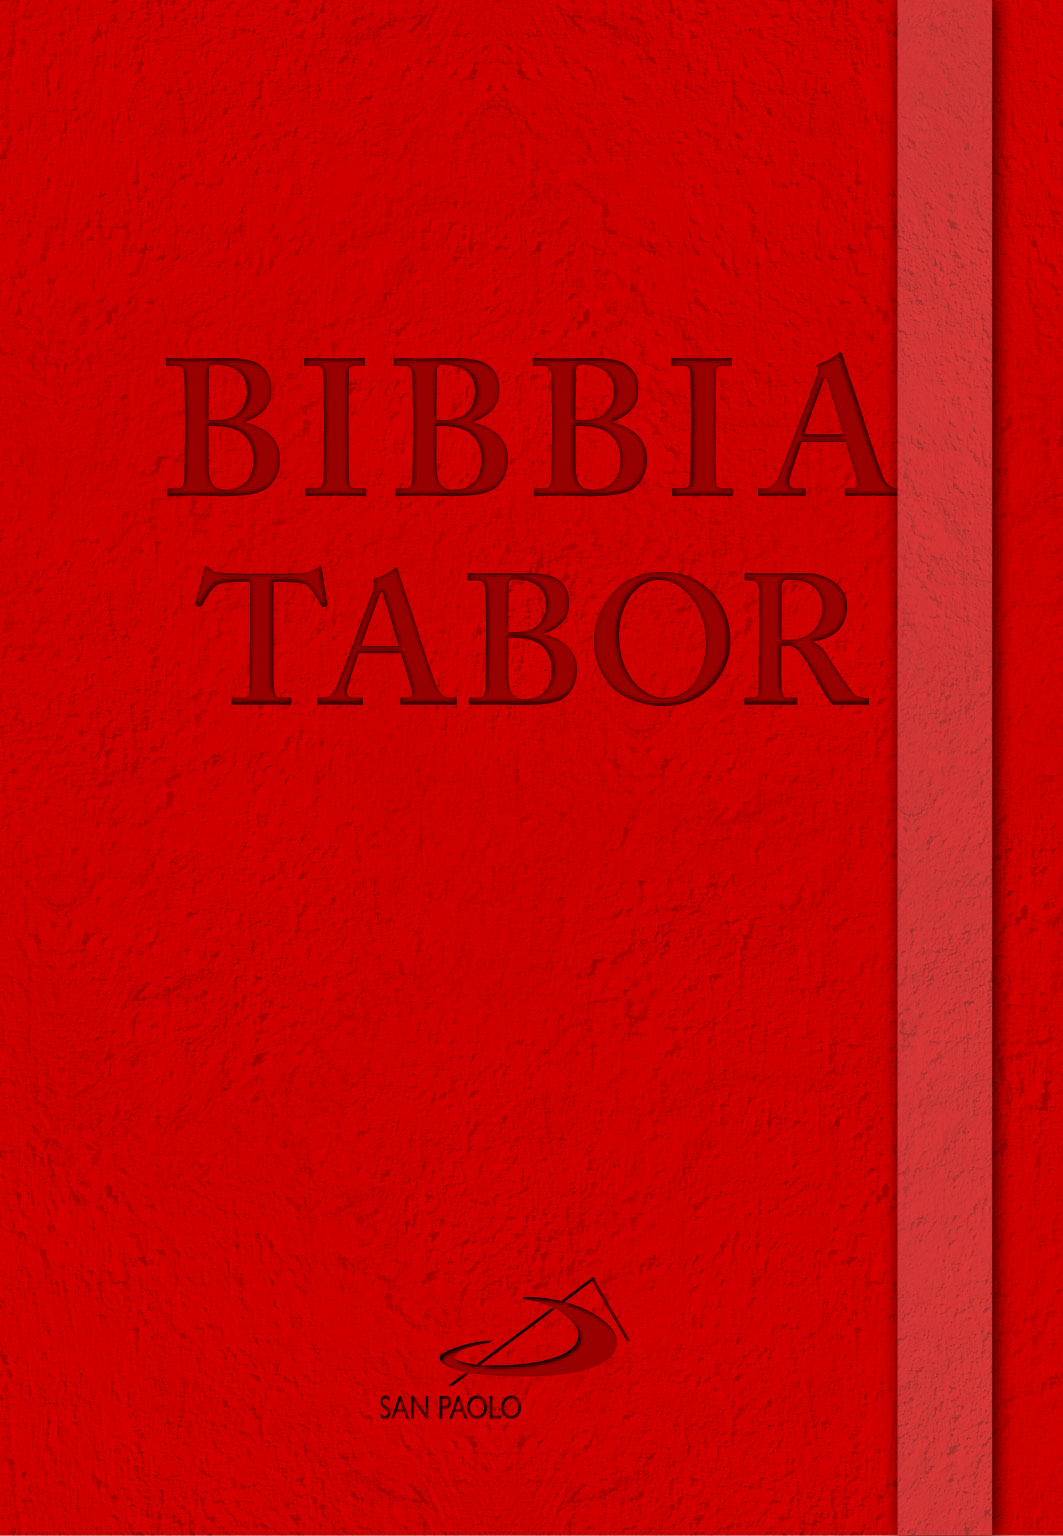 Libri Bibbia Tabor NUOVO SIGILLATO, EDIZIONE DEL 01/05/2020 SUBITO DISPONIBILE